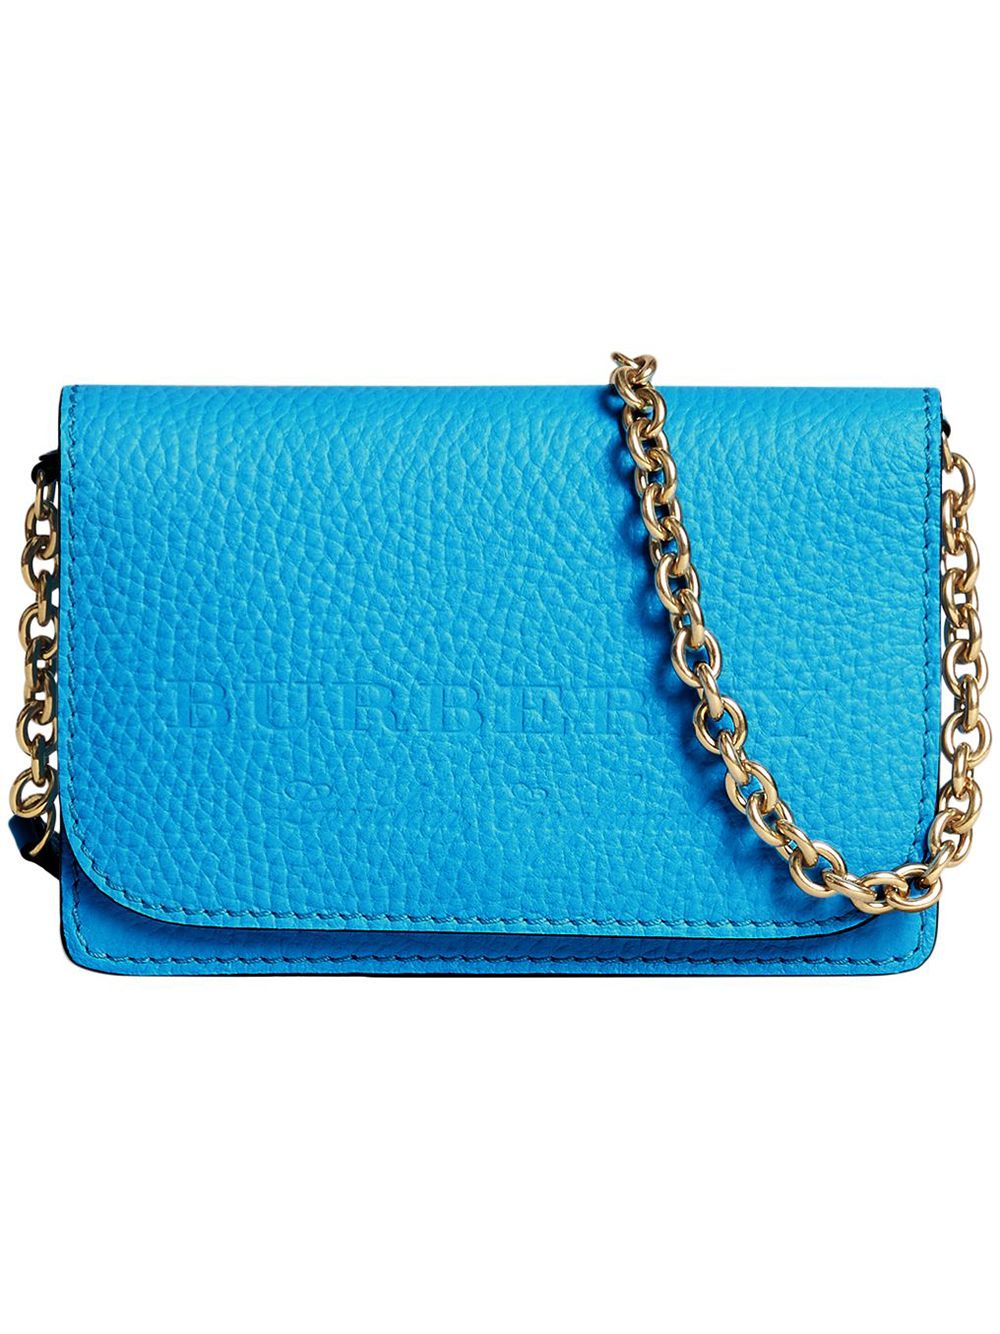 Blue burberry purse 